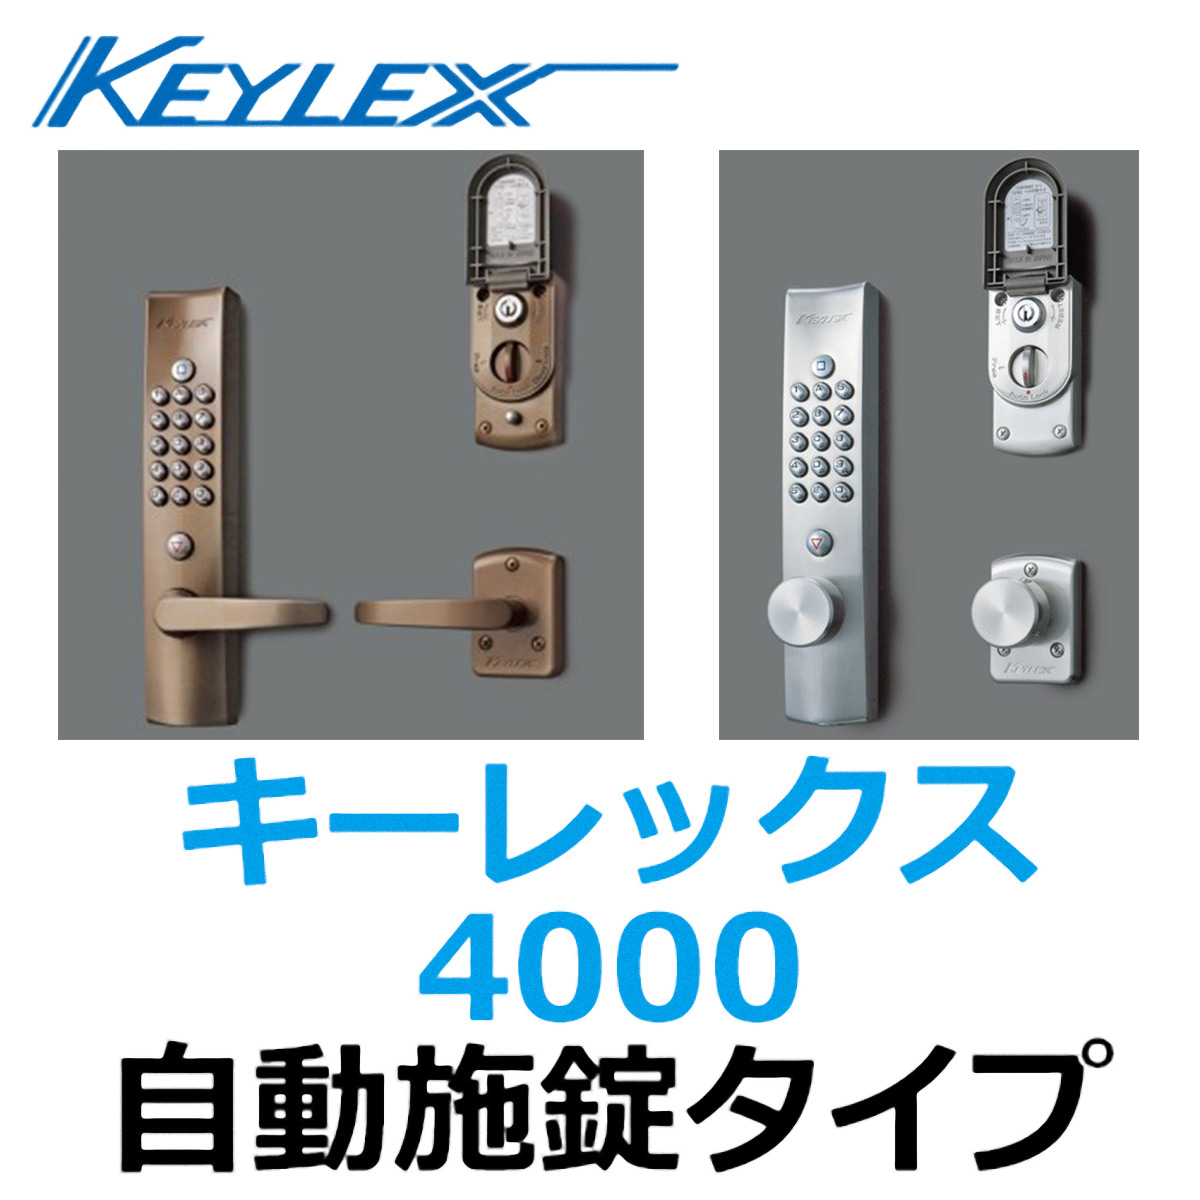 新作送料無料 長沢製作所 キーレックス 4000シリーズ 自動施錠デッドロック プラグ切替タイプ